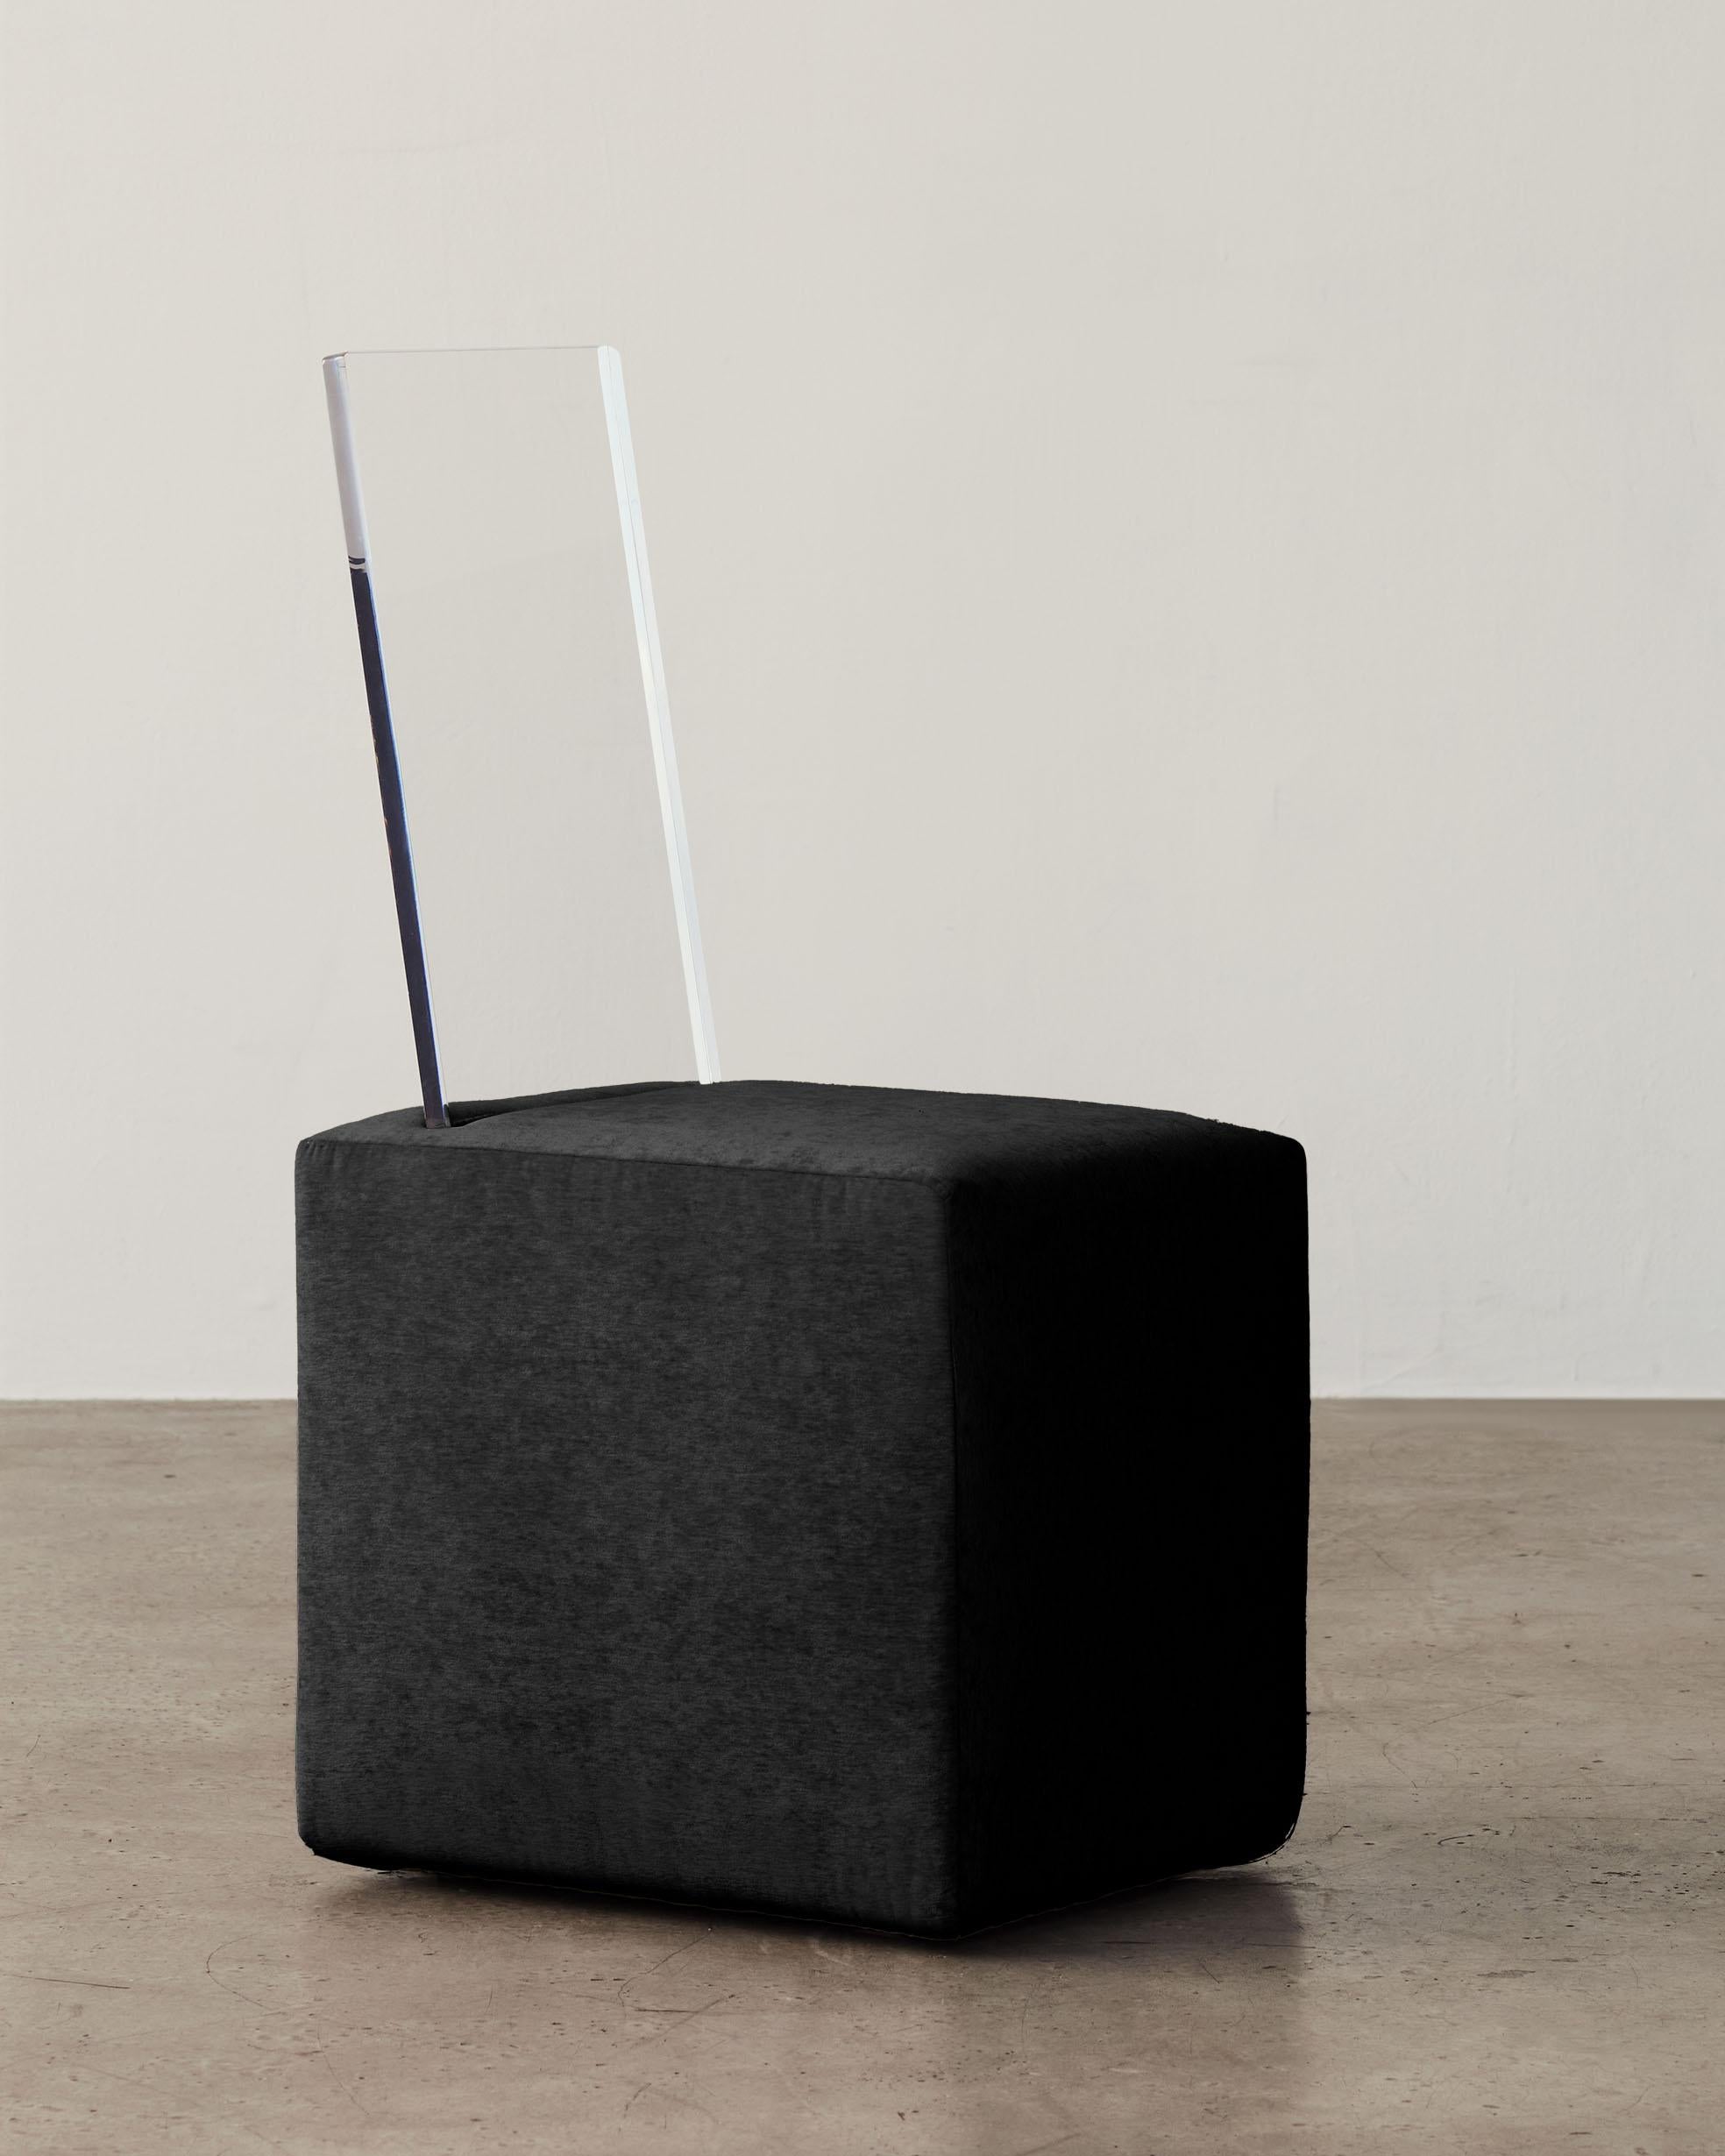 Vu dans : Sight Unseen, Interior Design Magazine, Surface Magazine

BLOC Cube Chair fait partie d'une collection de cinq pièces de mobilier sculptural rembourré et en matériaux mixtes. La Collection S'inspire de formes géométriques familières